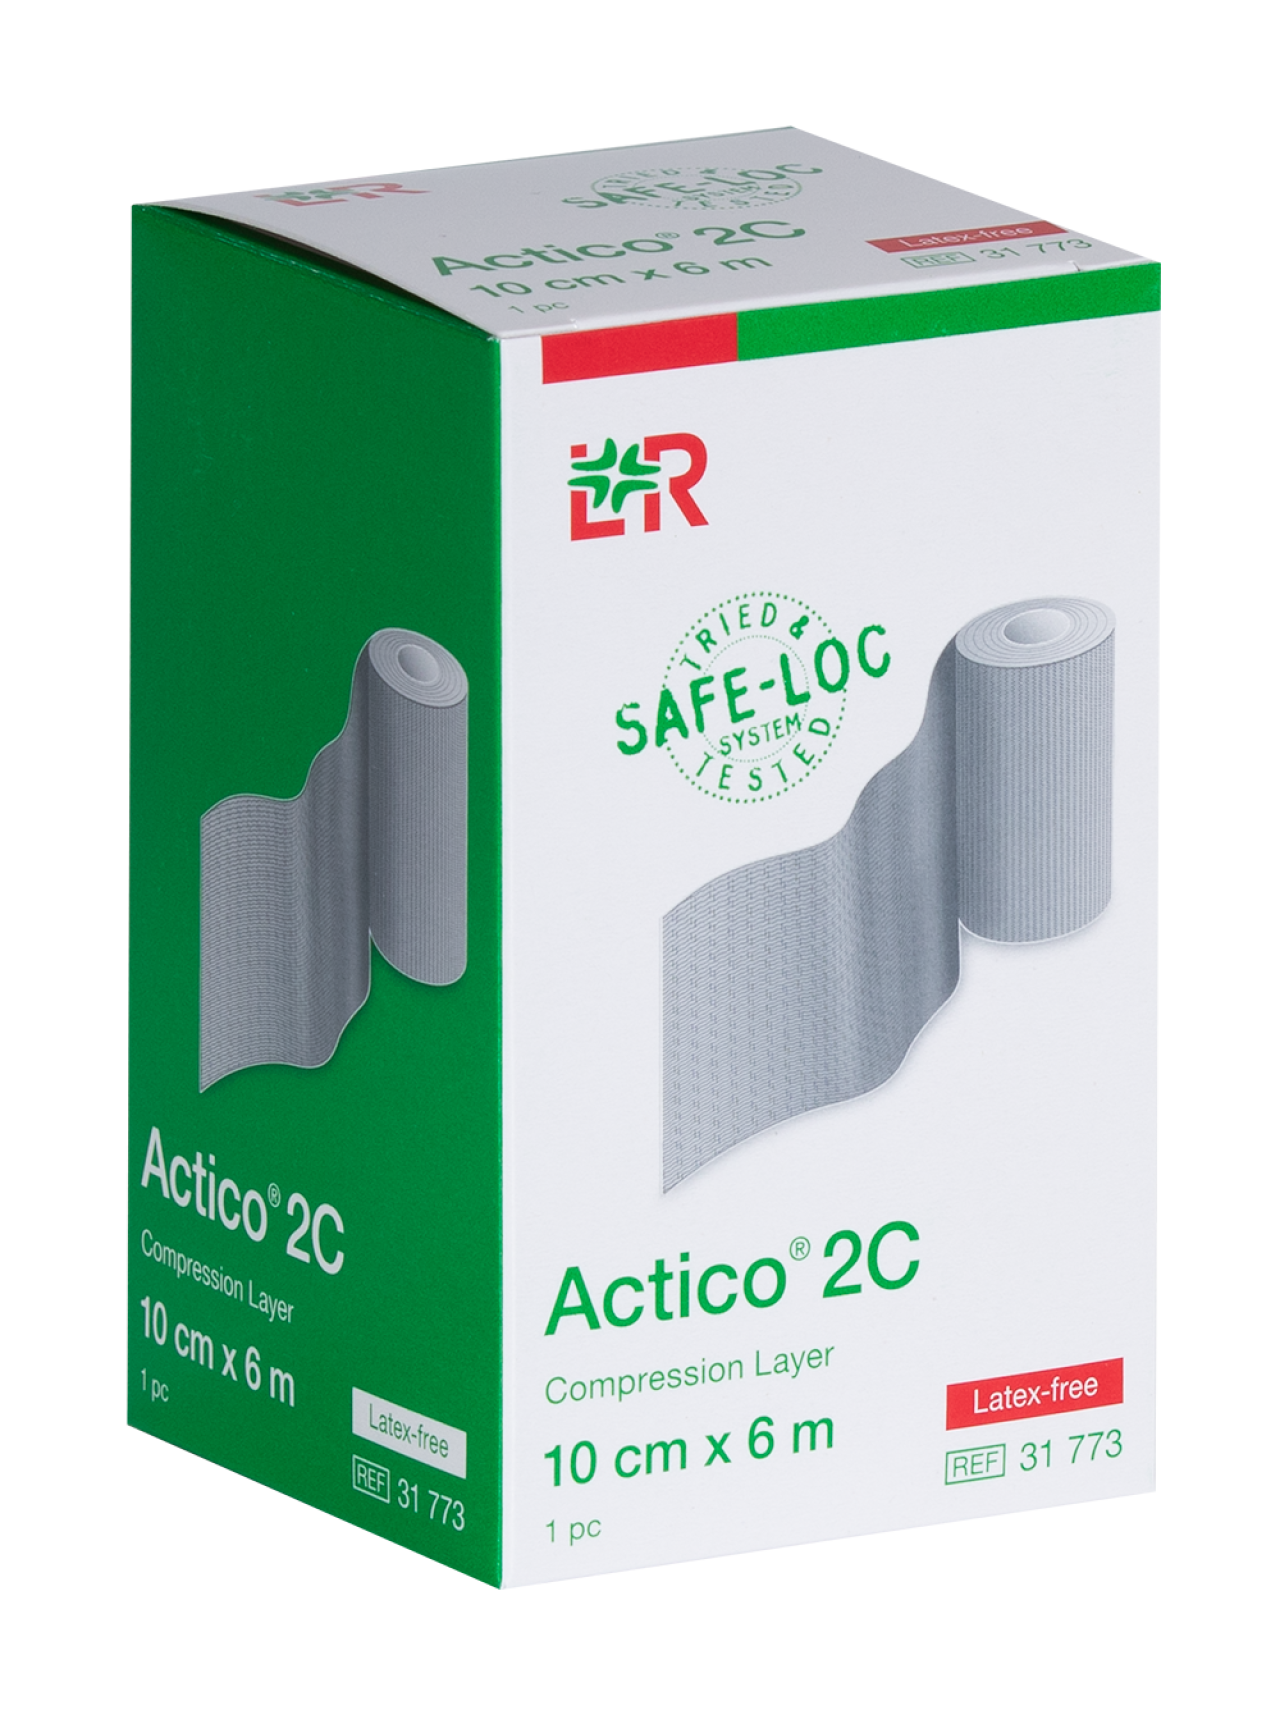 Actico® compression bandage